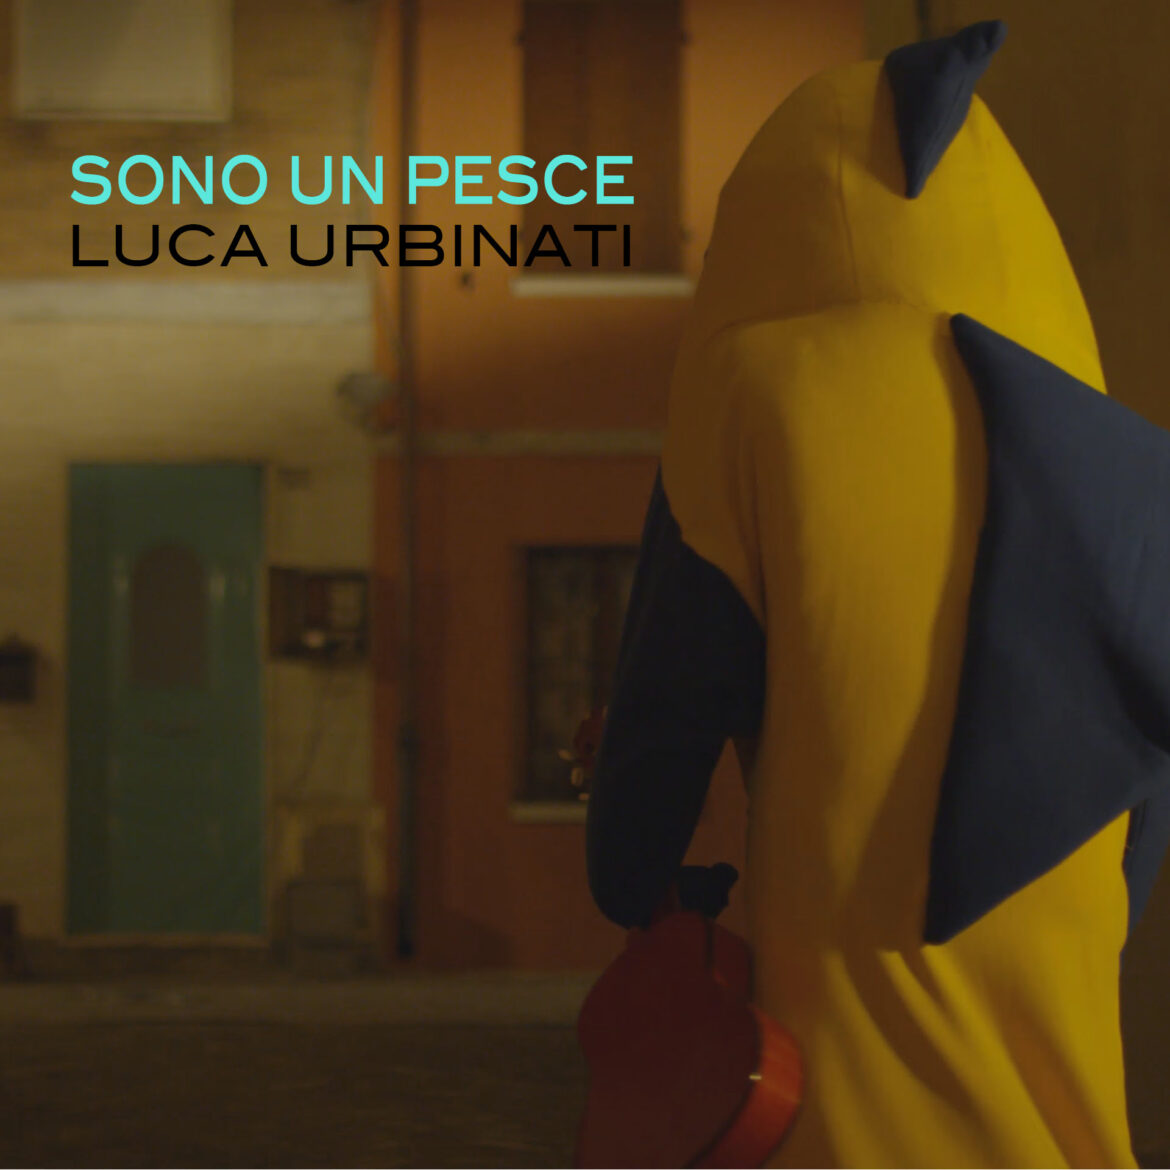 Luca Urbinati, da venerdì 11 dicembre il nuovo brano “Sono un pesce”